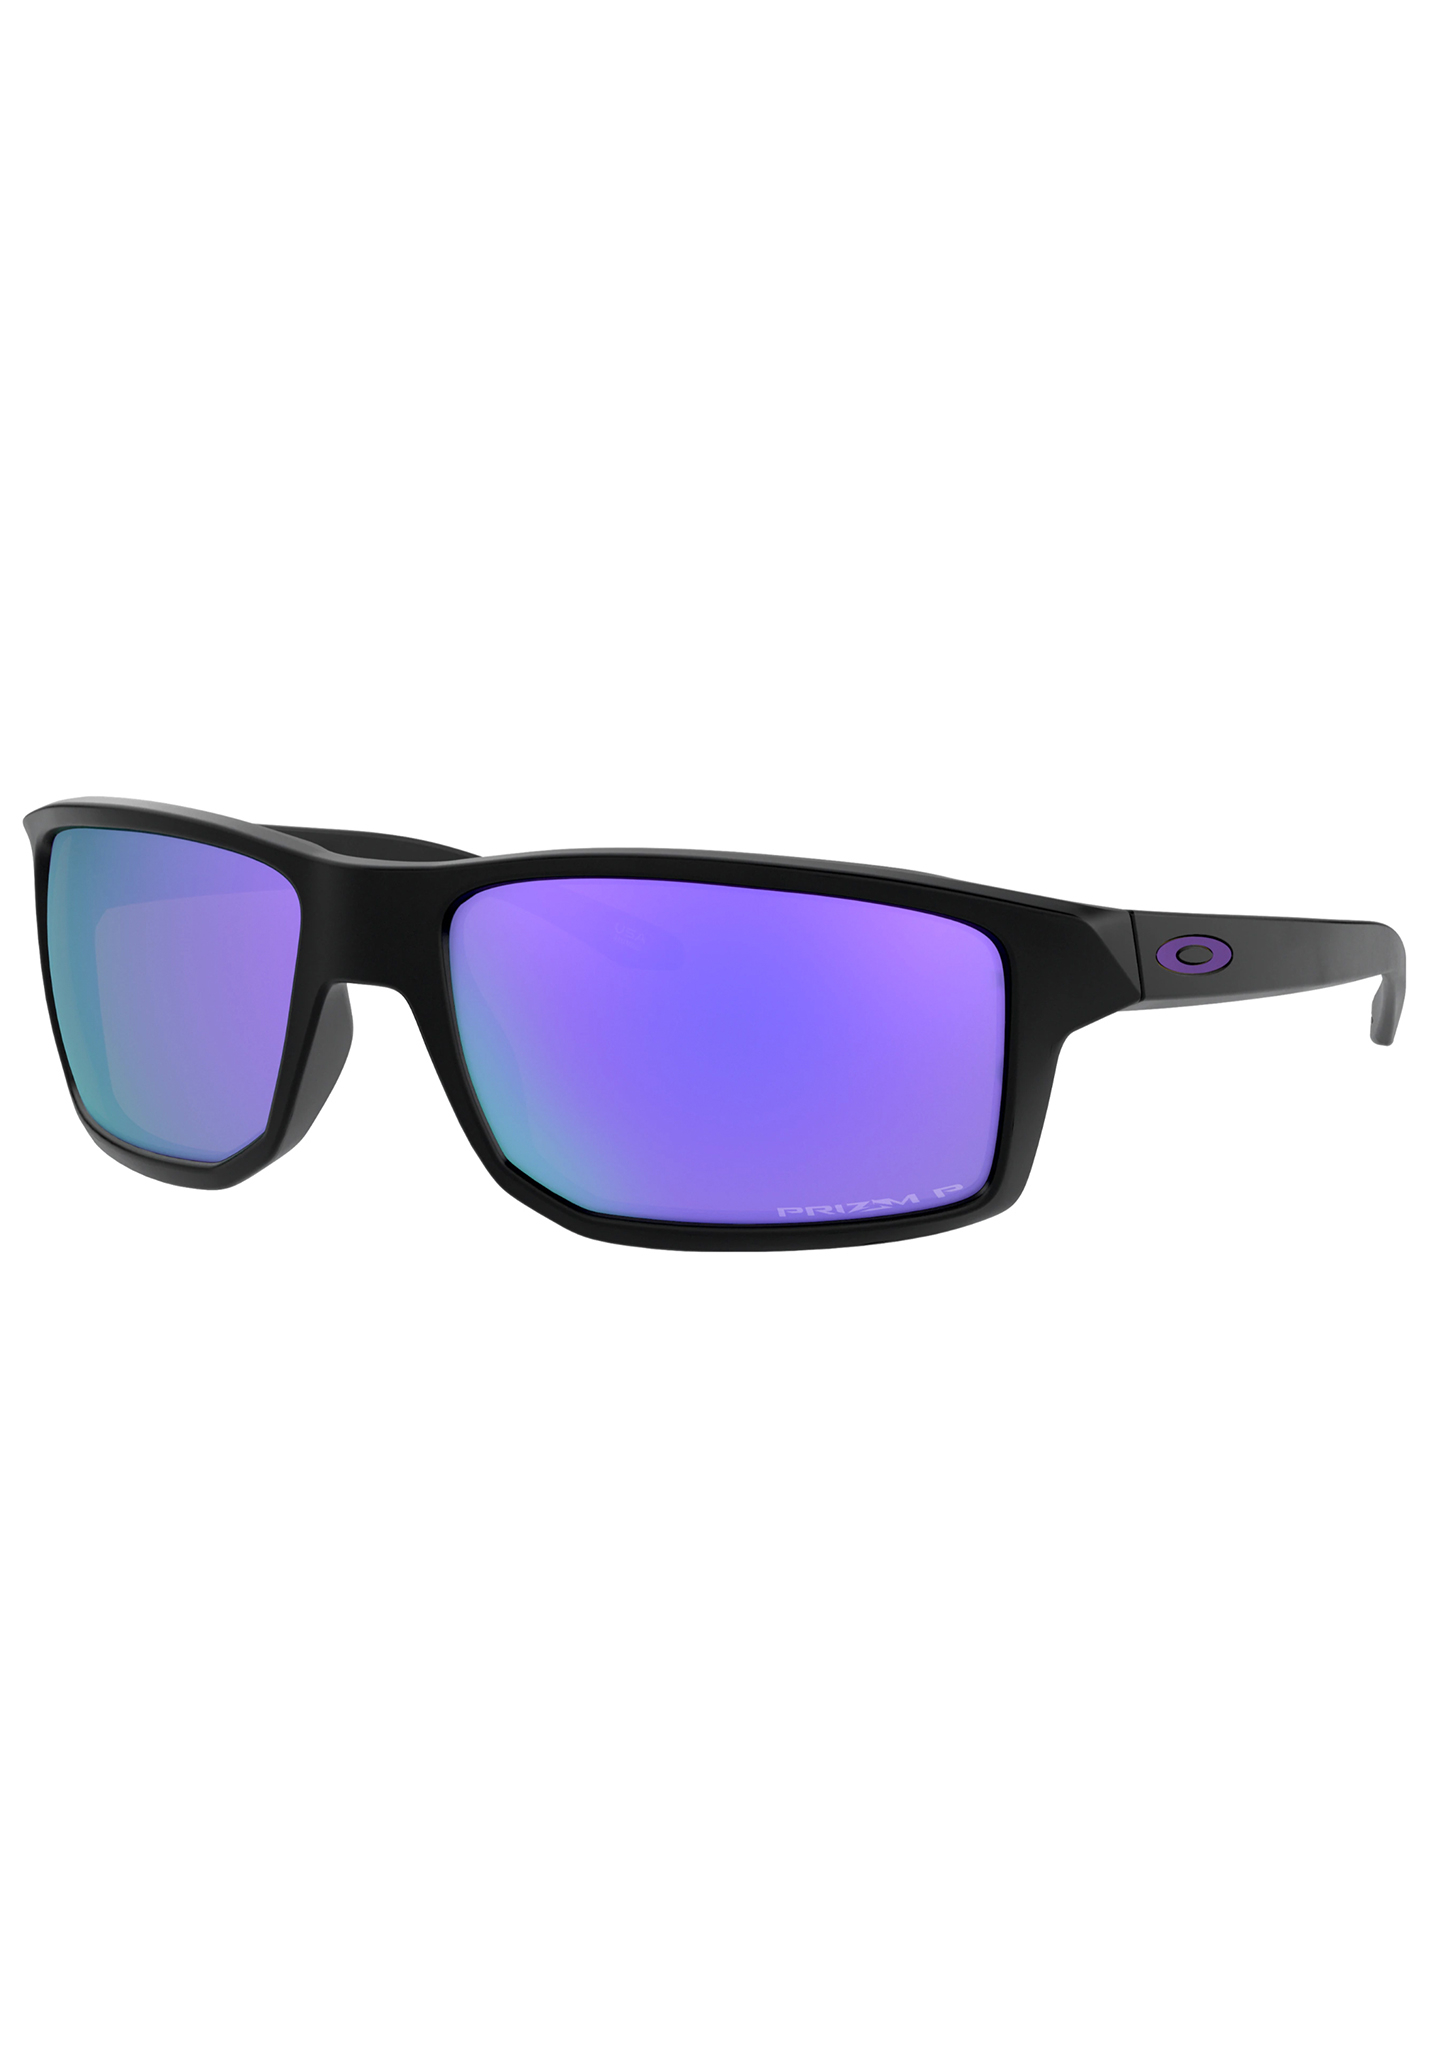 Oakley Gibston Sonnenbrillen mattschwarz/prizm violett polarisiert One Size